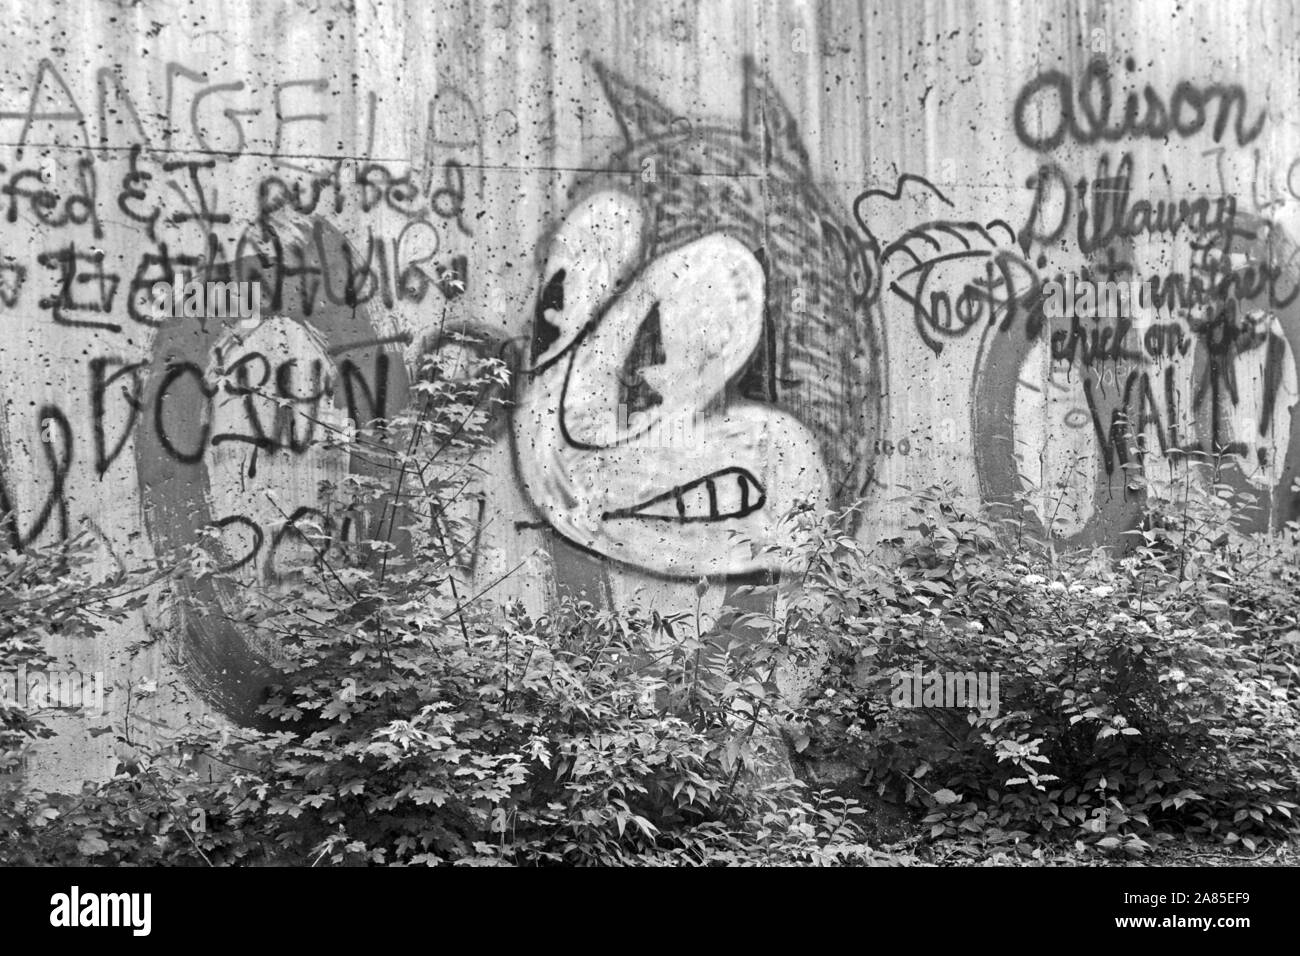 Graffiti an der Berliner Mauer, Deutschland 1984. Il muro di Berlino decorato con graffiti, Germania 1984. Foto Stock